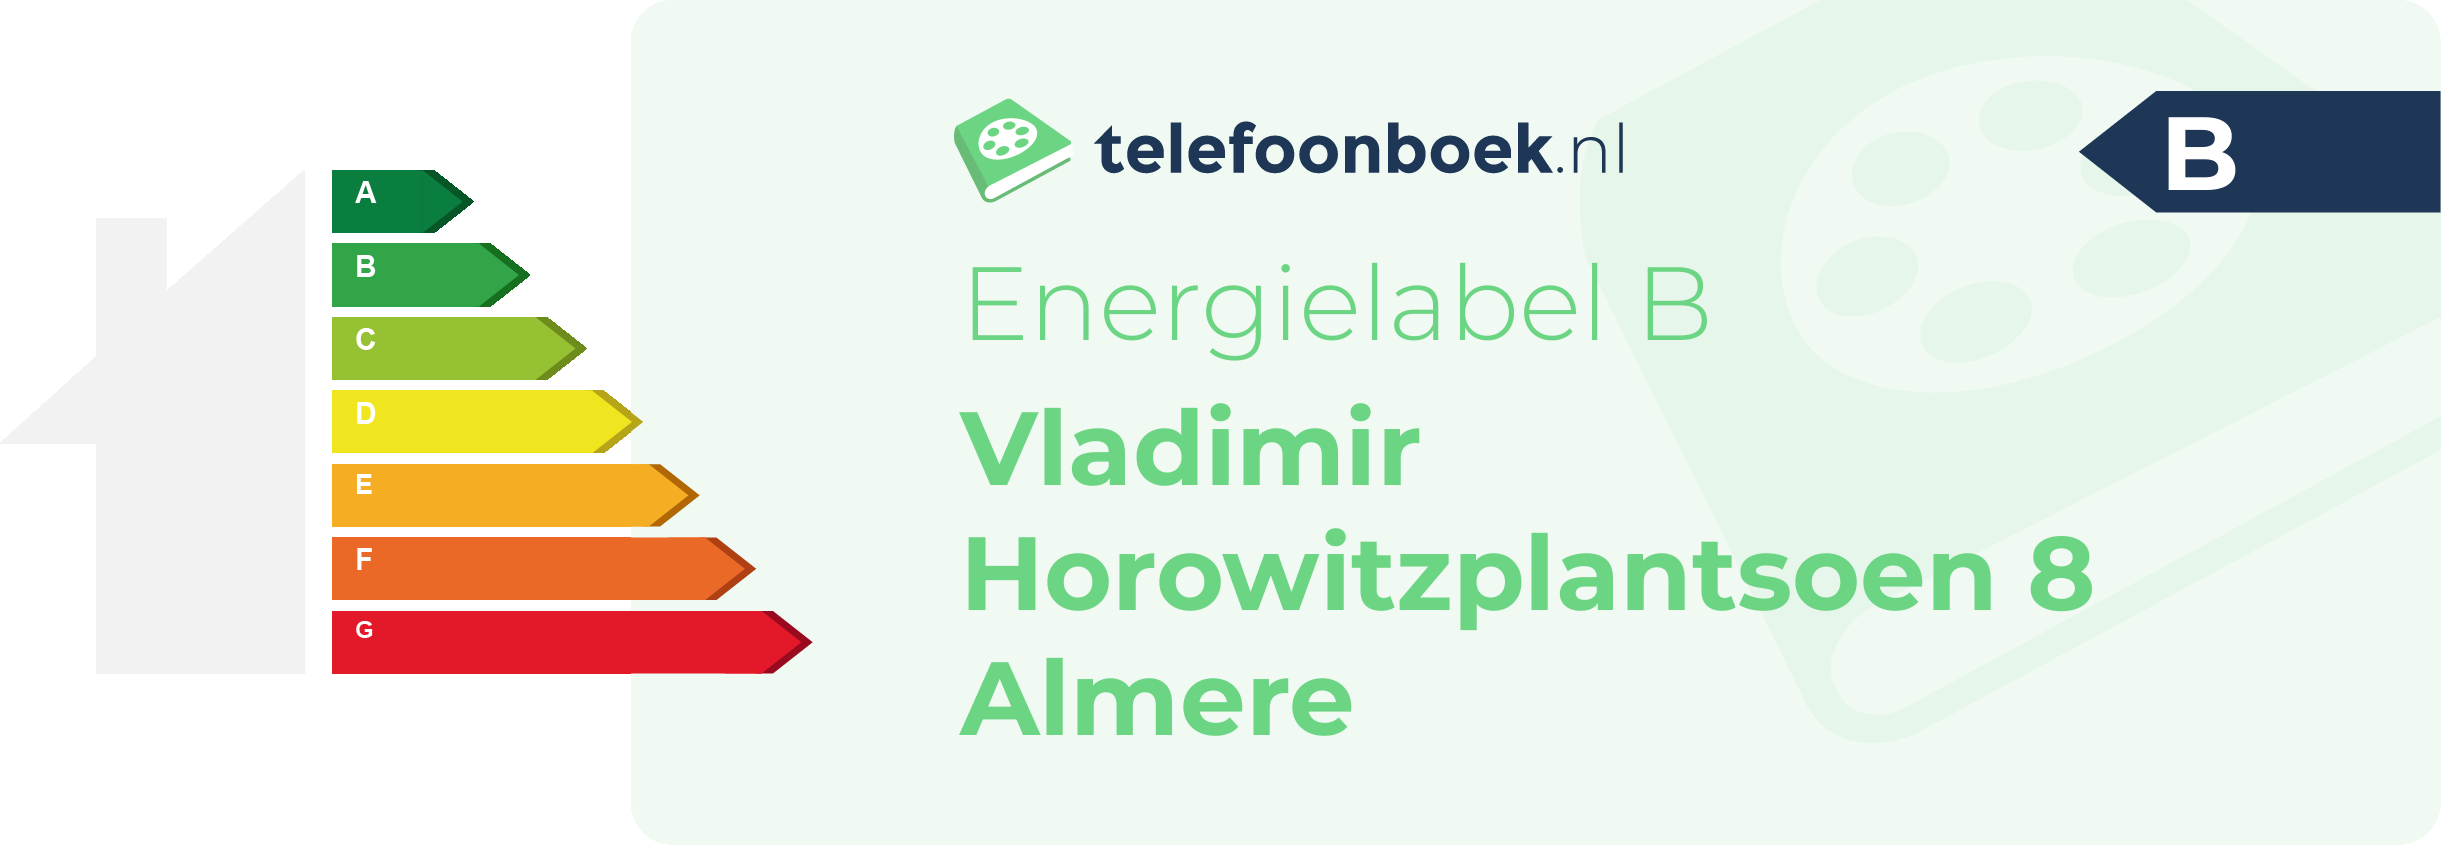 Energielabel Vladimir Horowitzplantsoen 8 Almere